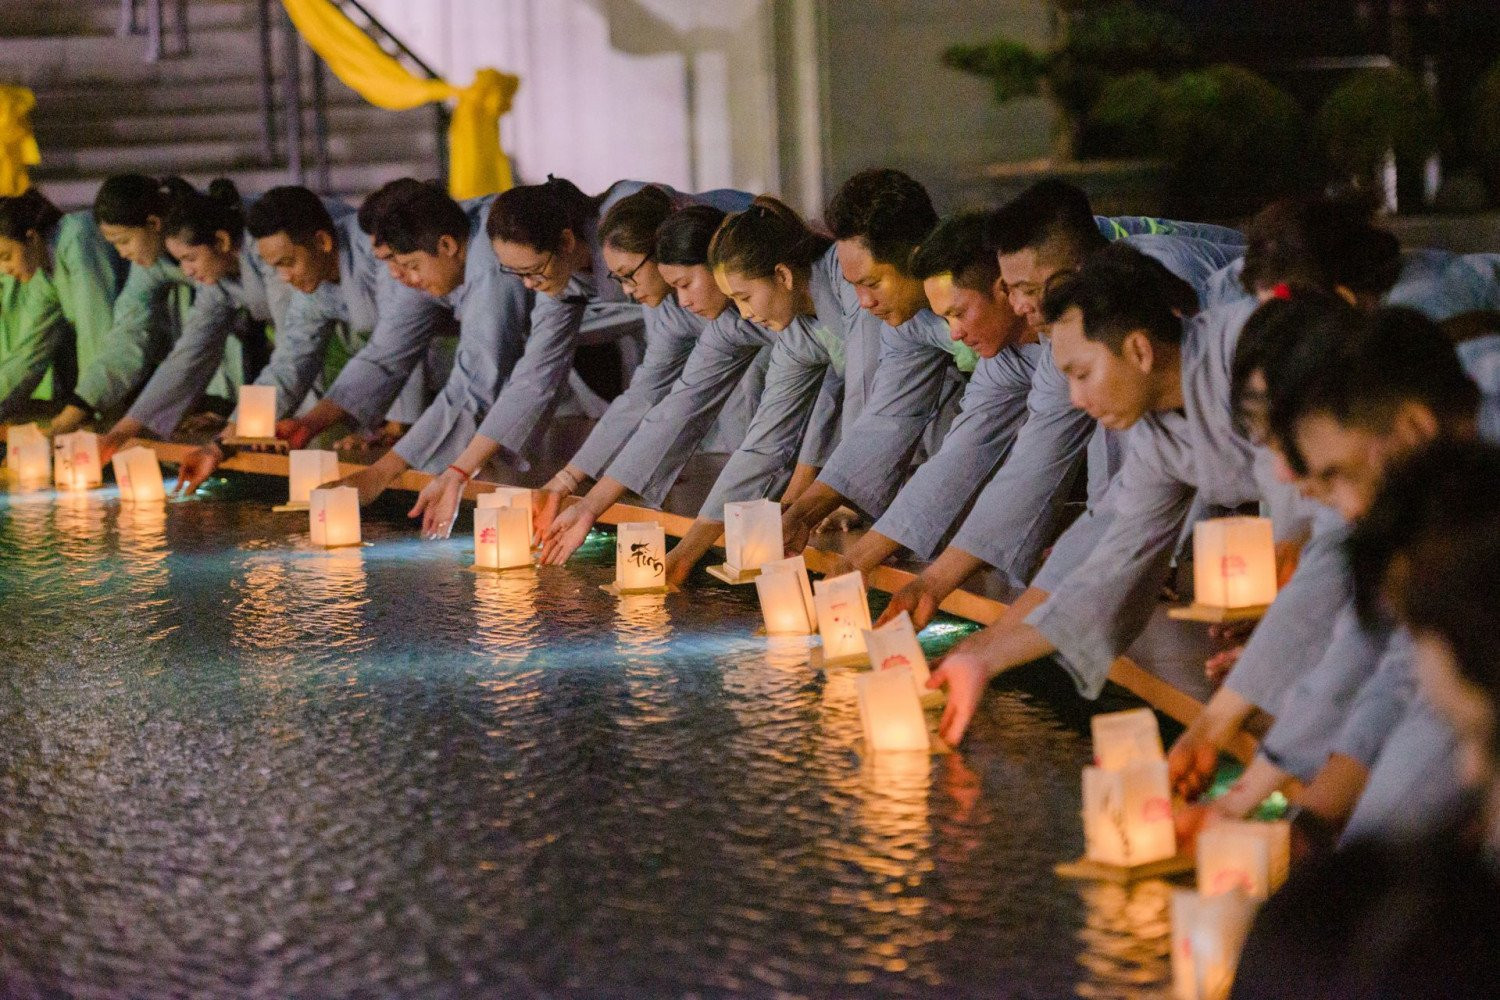 Đại lễ dâng đăng kính mừng Phật đản sẽ được tổ chức vào ngày 18/5 trên núi Bà Đen. Ảnh: Dương Đức Kiên/Báo Tây Ninh Online